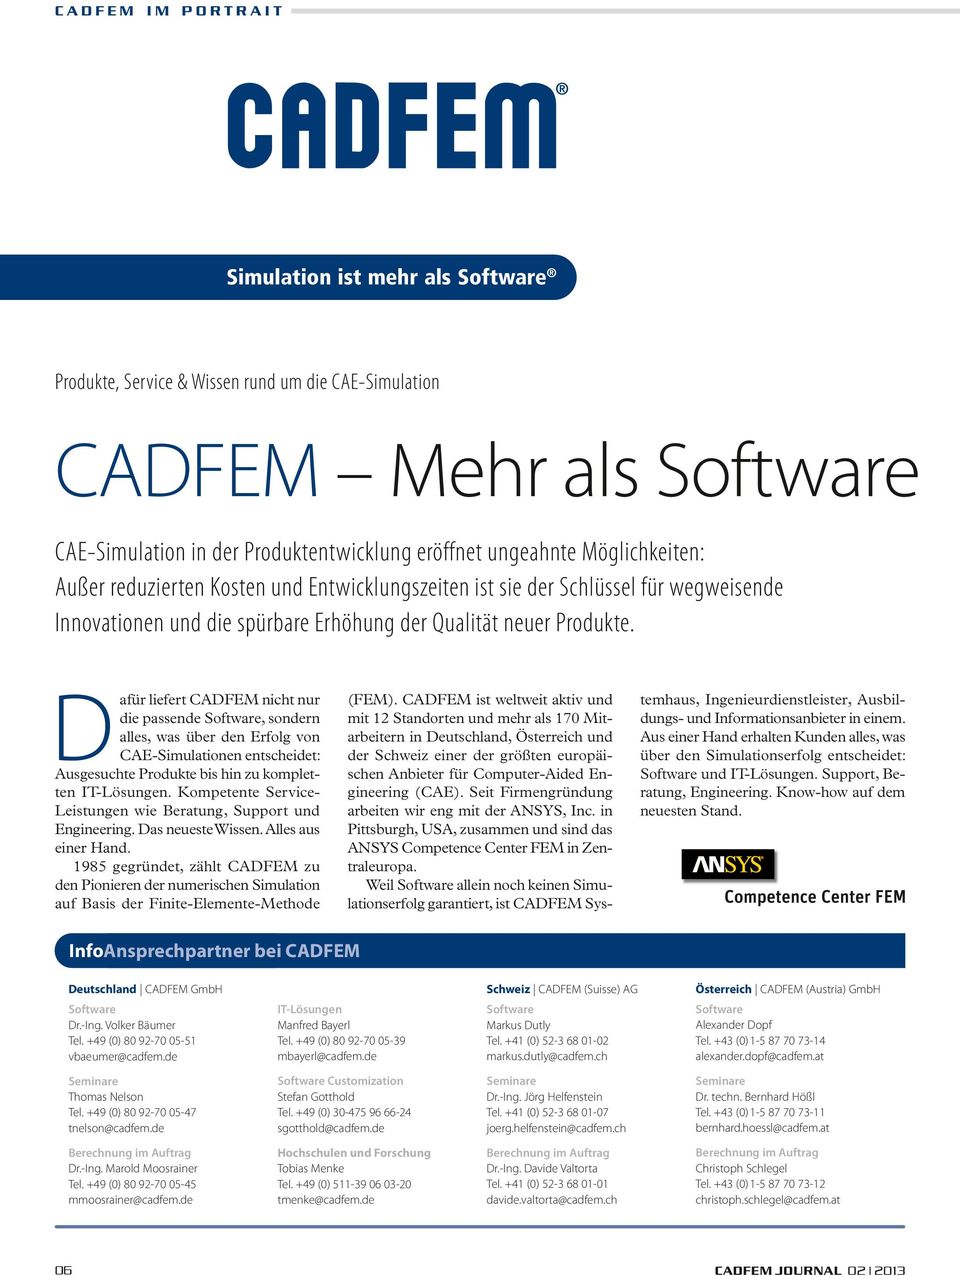 Dafür liefert CADFEM nicht nur die passende Software, sondern alles, was über den Erfolg von CAE-Simulationen entscheidet: Ausgesuchte Produkte bis hin zu kompletten IT-Lösungen.